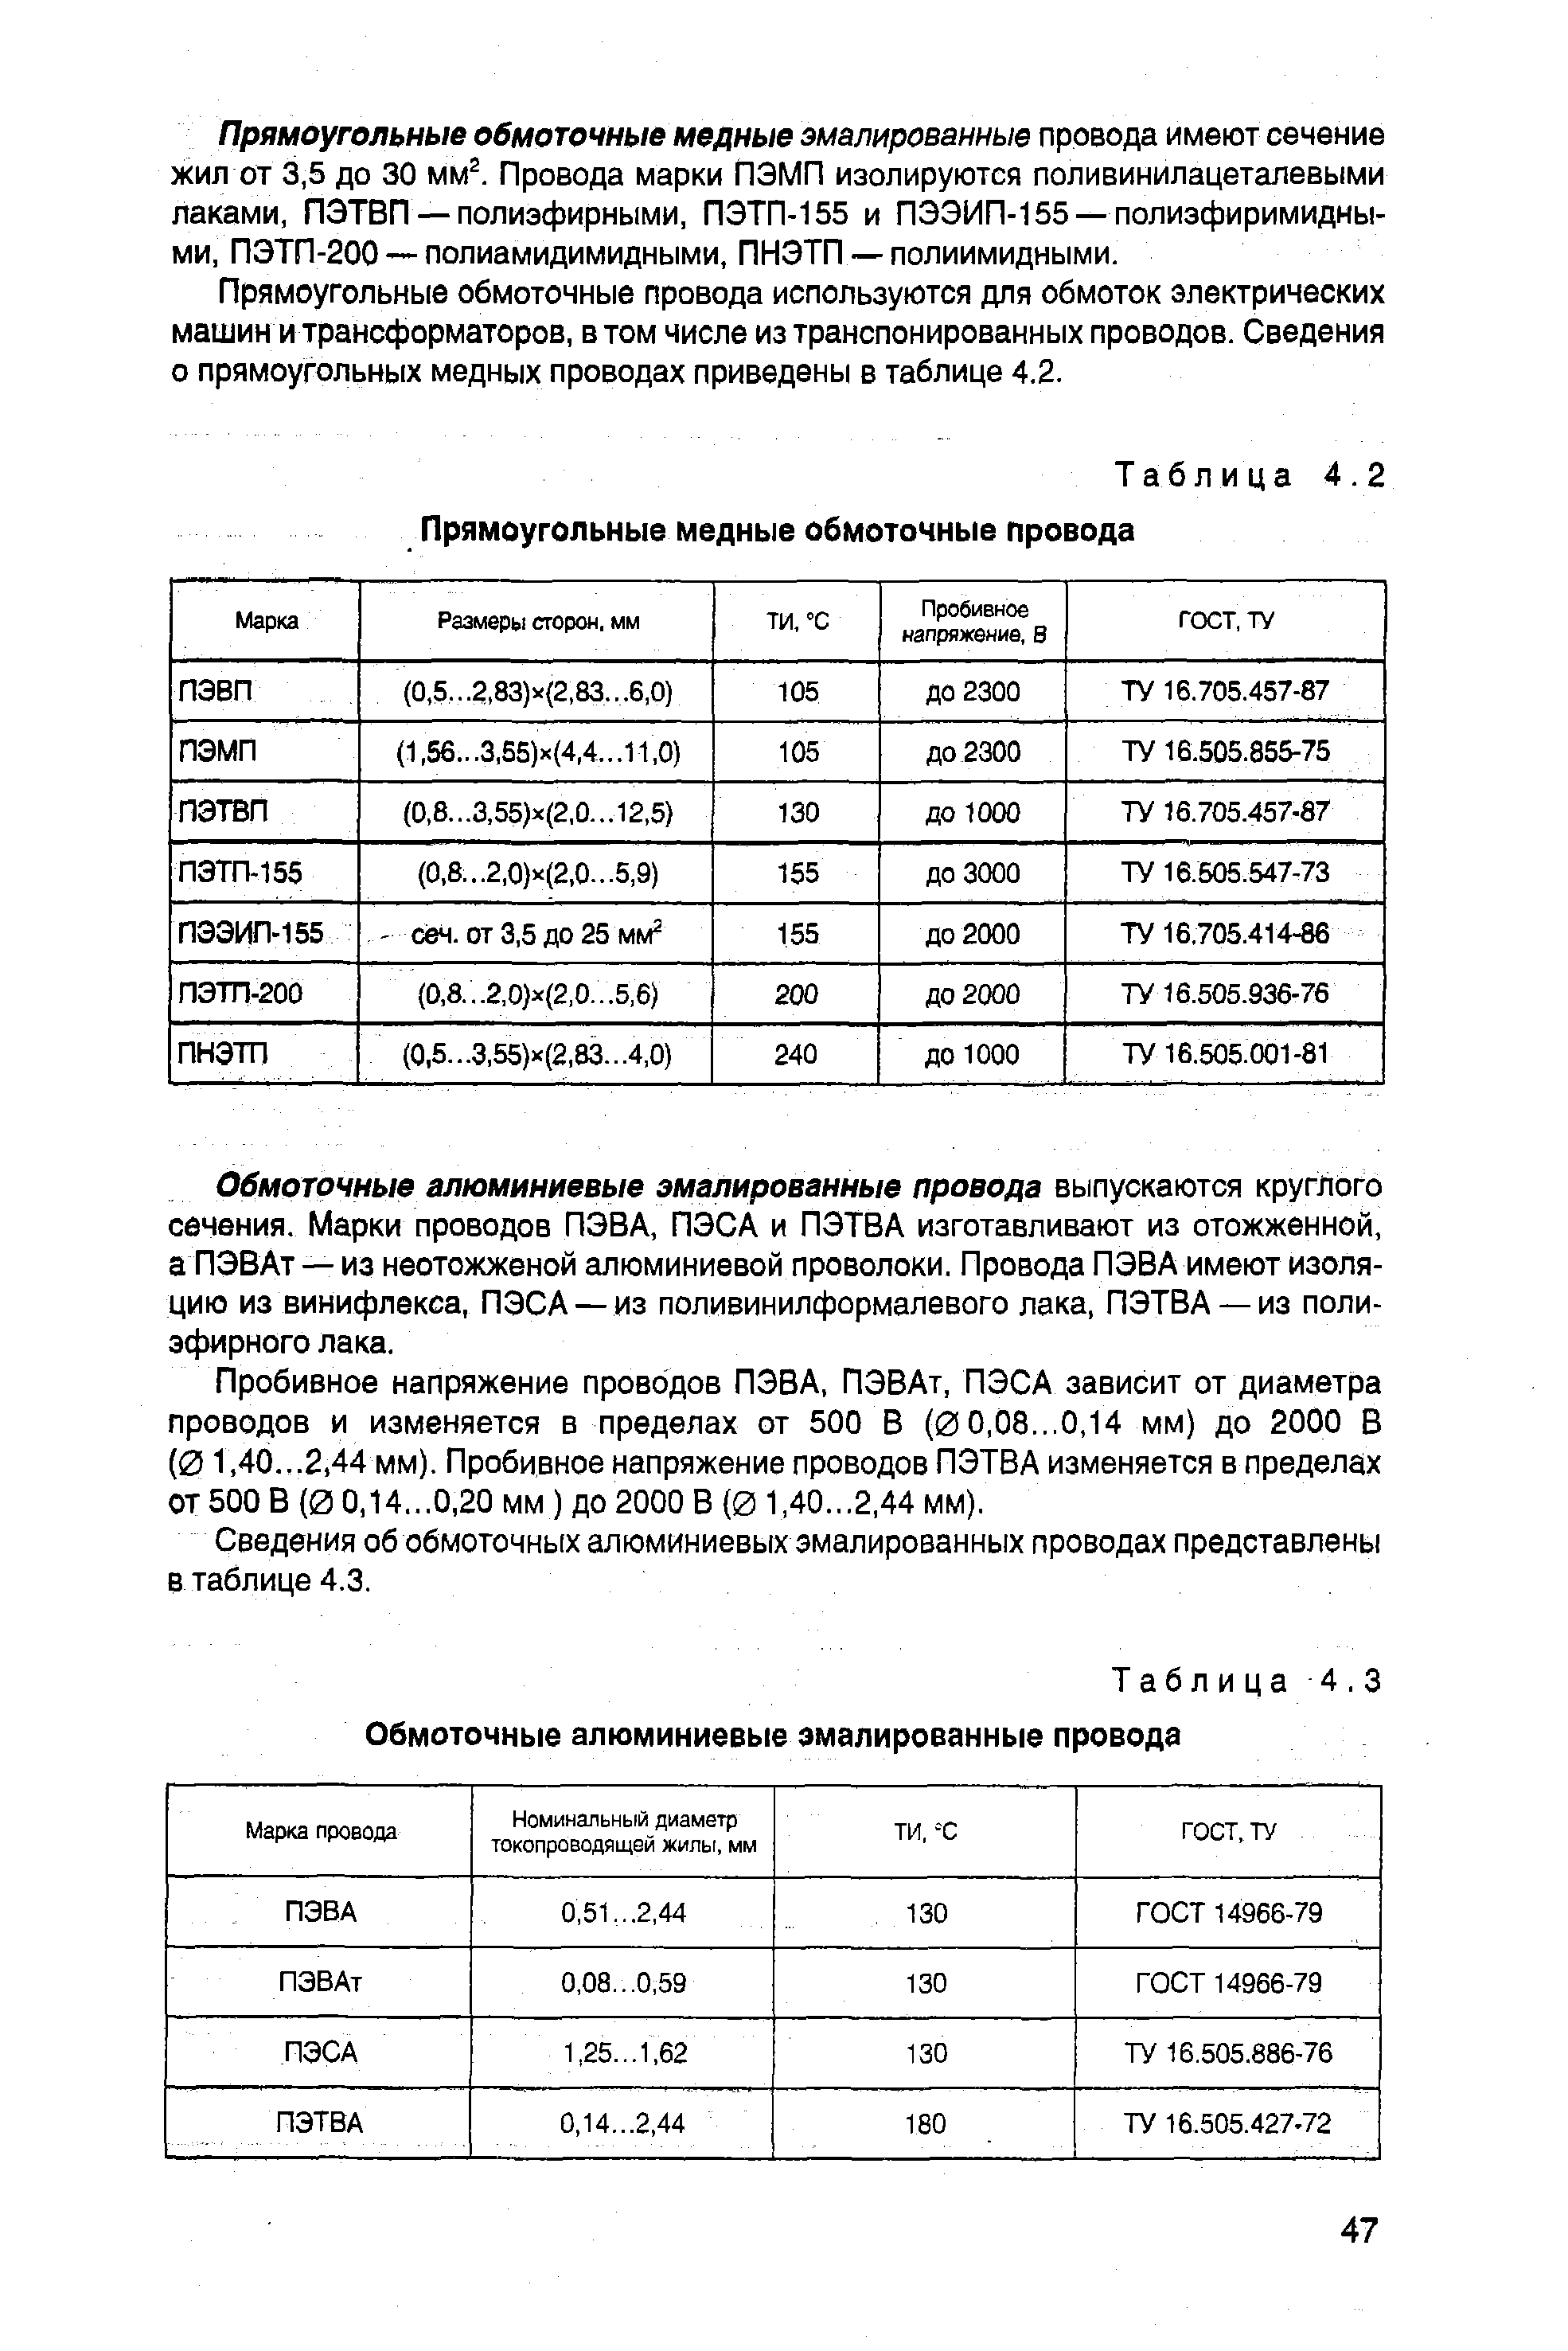 Таблица 4.3 Обмоточные алюминиевые эмалированные провода
